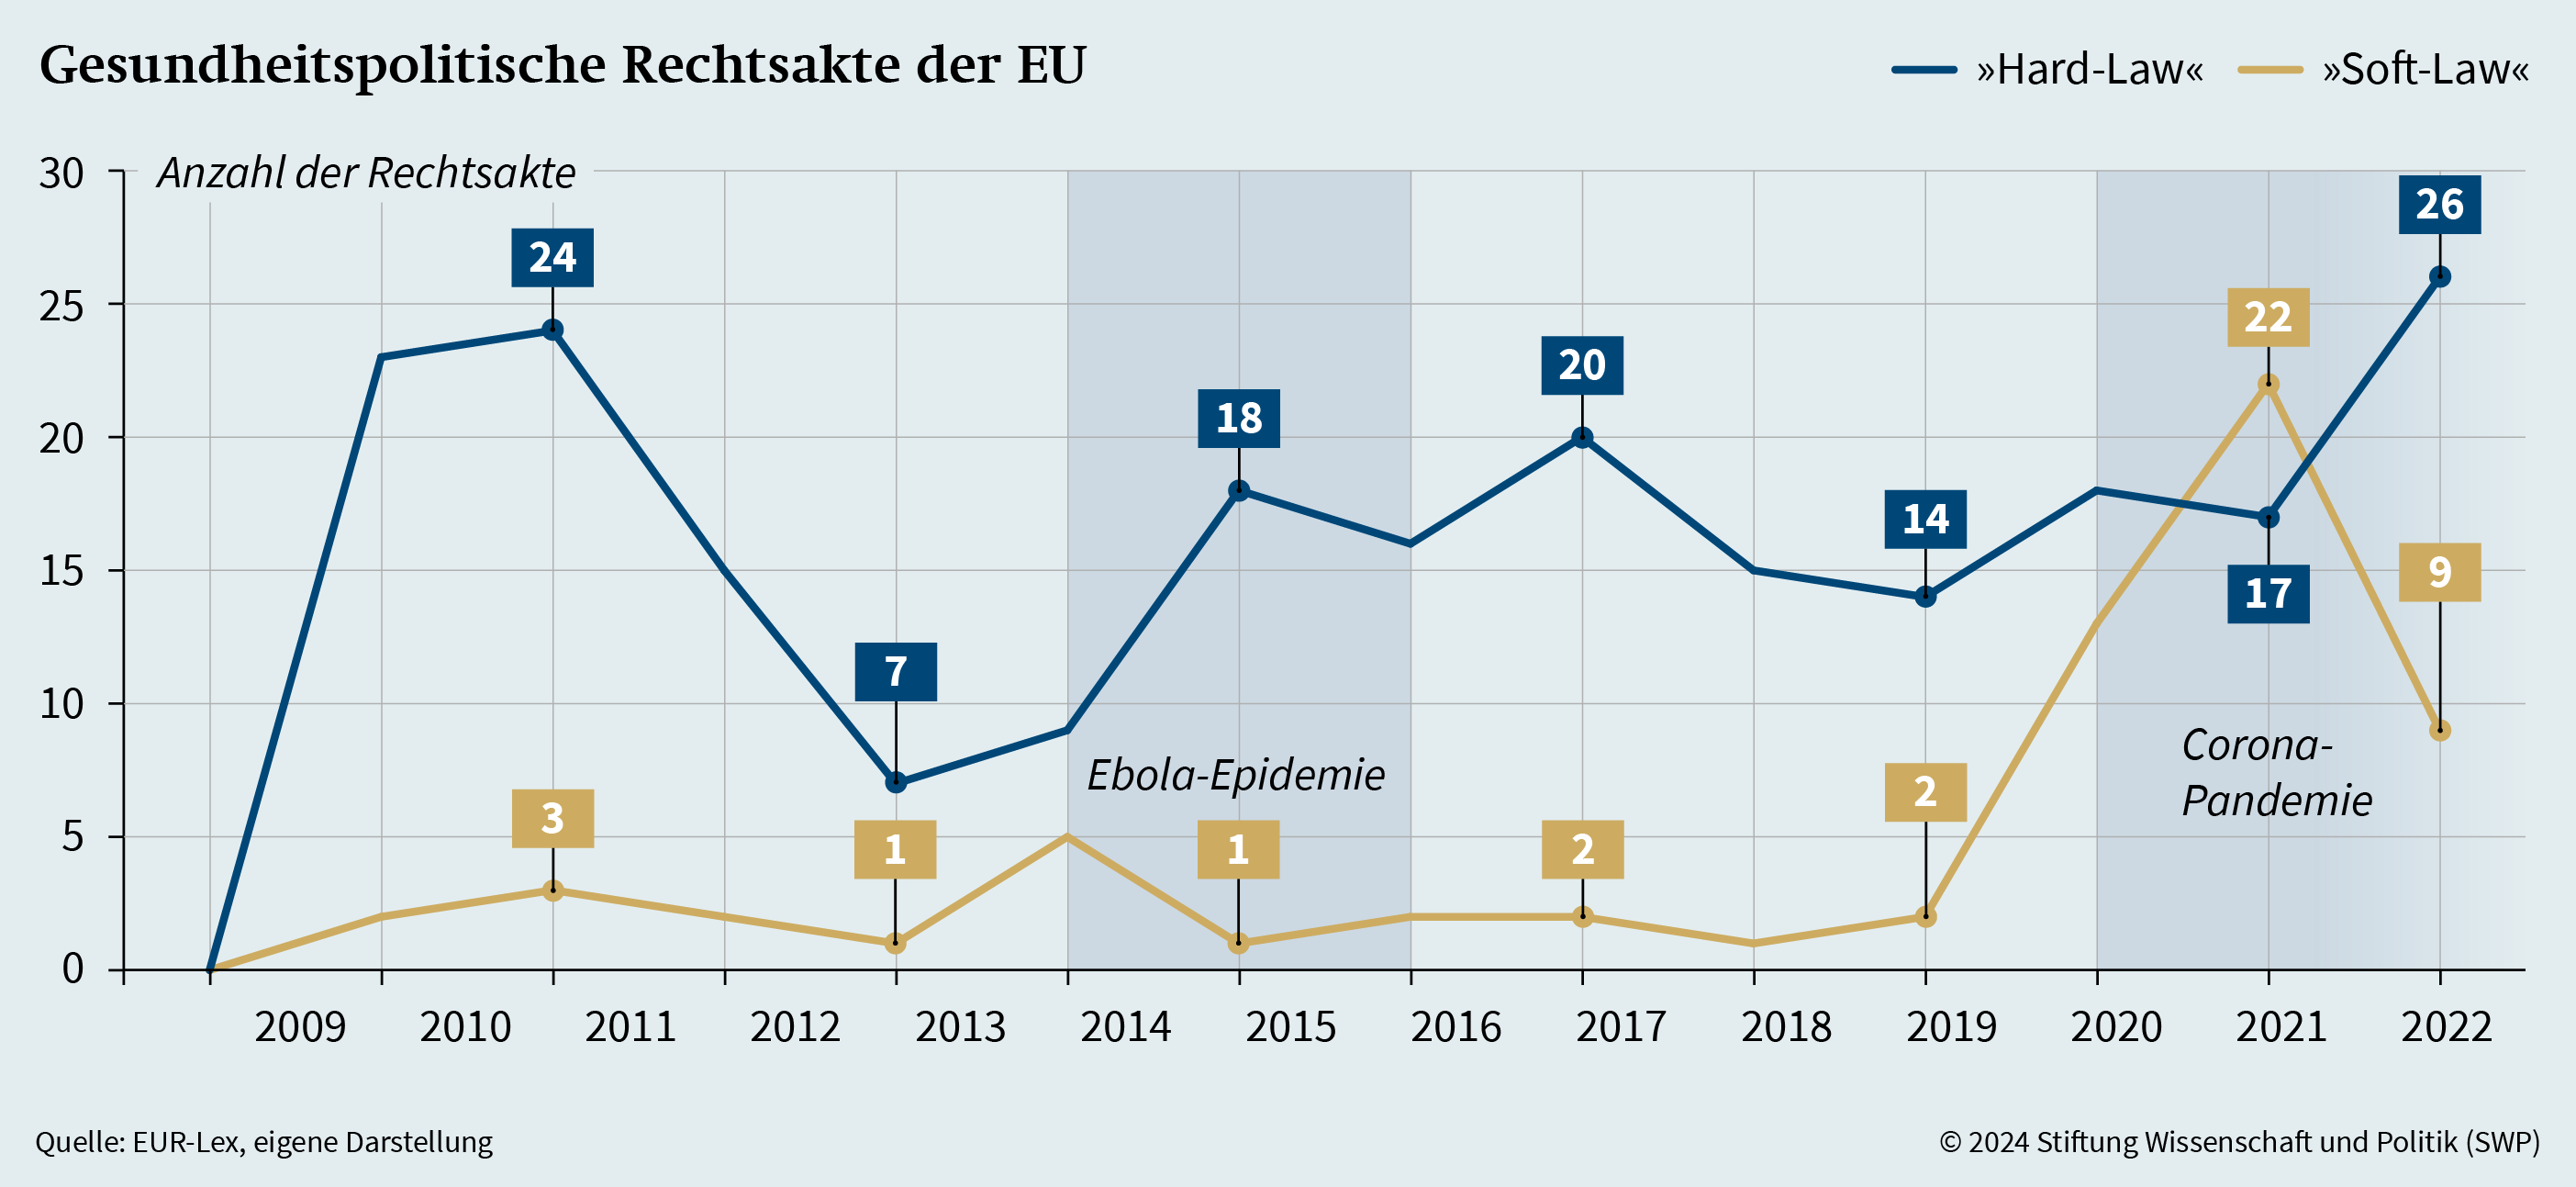 Grafik 1: Gesundheitspolitische Rechtsakte der EU